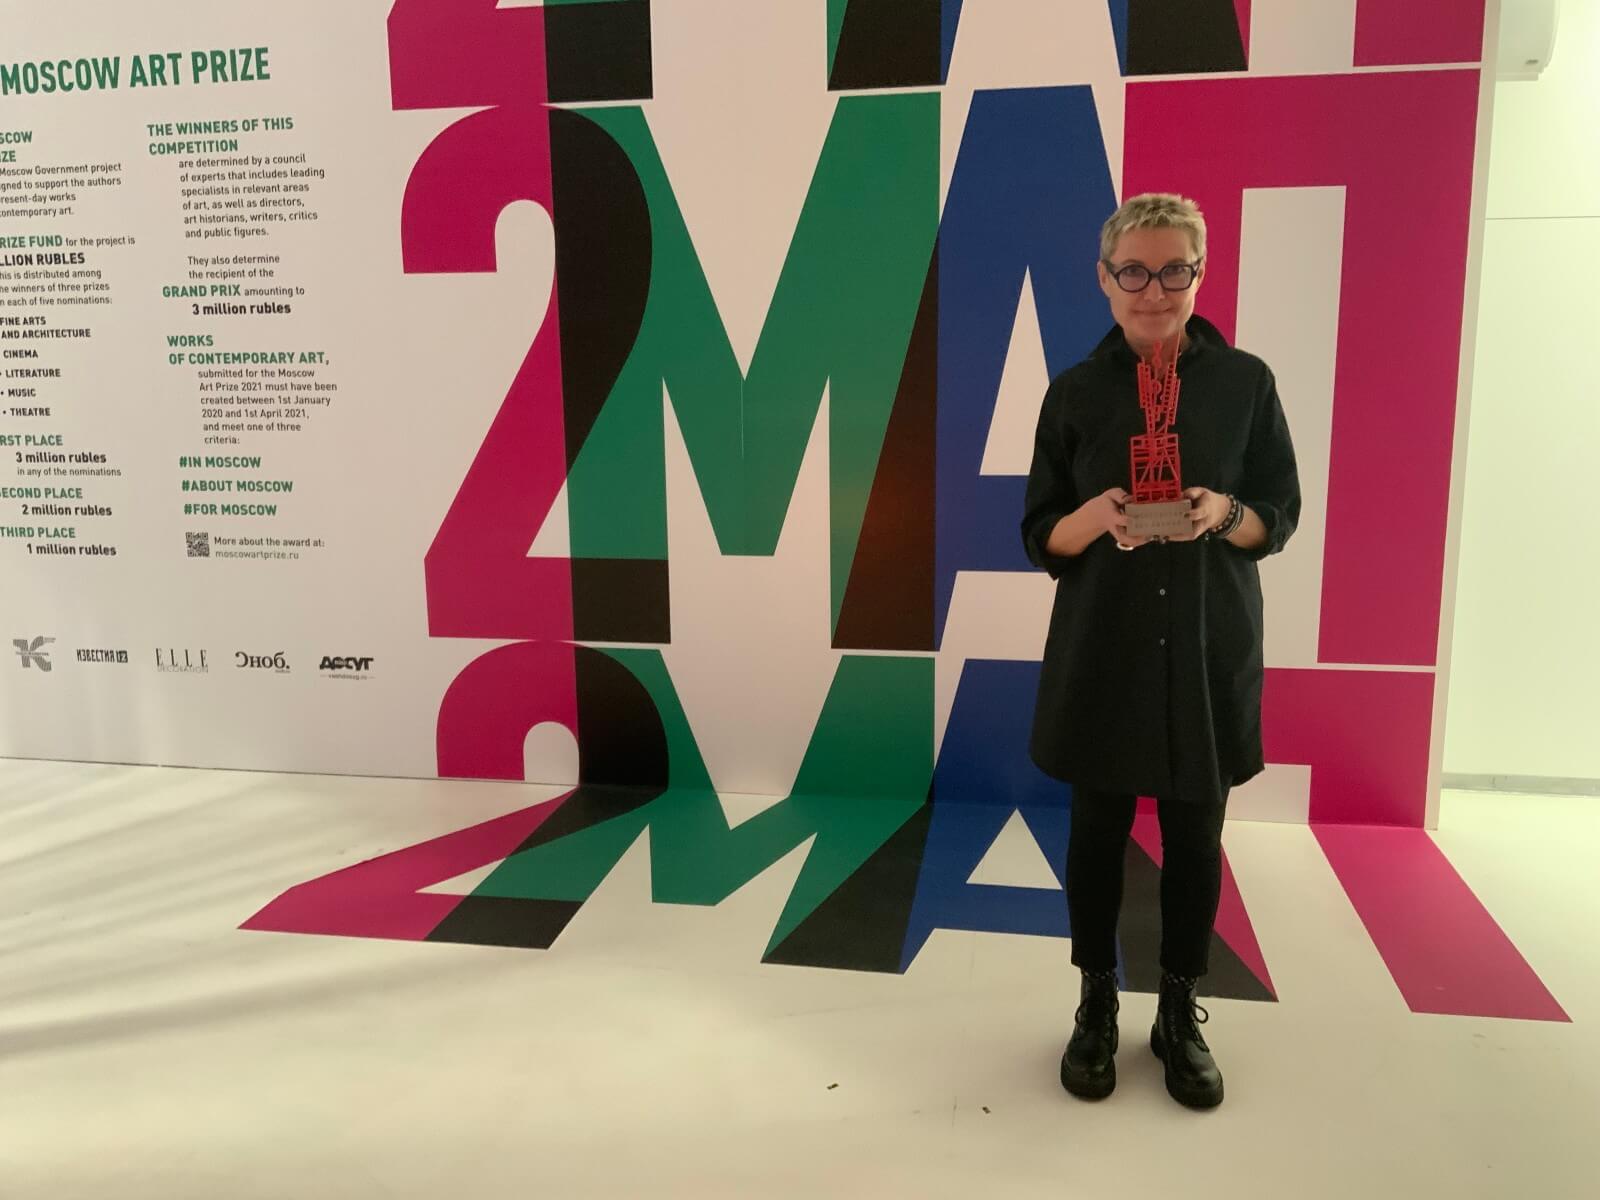 Проект РМС «Исполнительский практикум современной академической музыки» занял второе место в номинации «Музыка» Московской Арт Премии